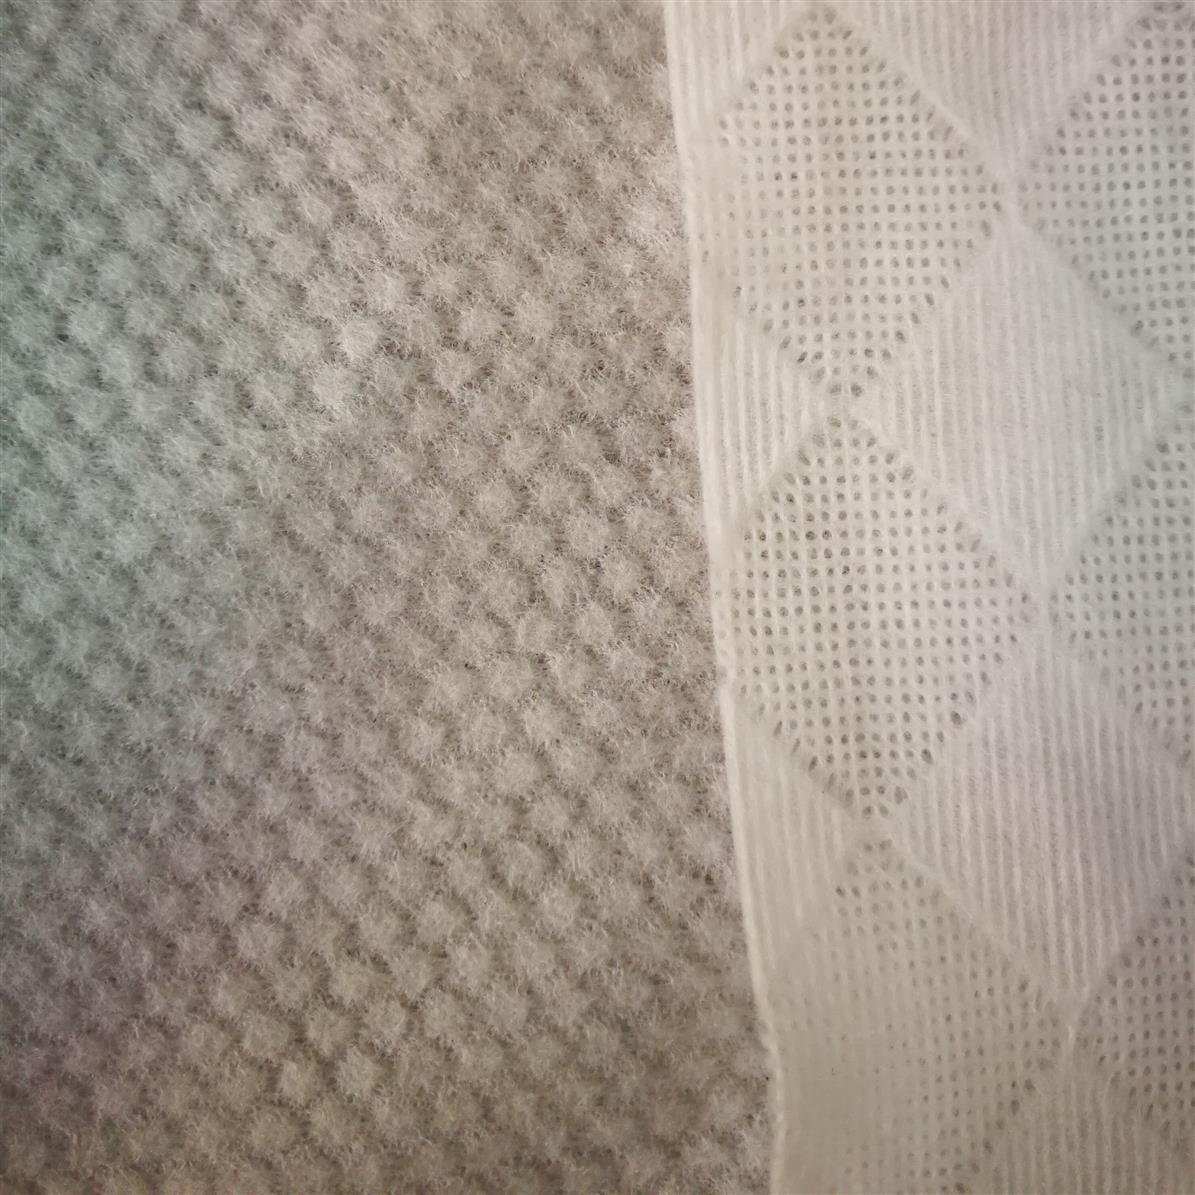 22目竹纤维水刺无纺布生产商 竹纤维珍珠纹湿巾布 水刺布